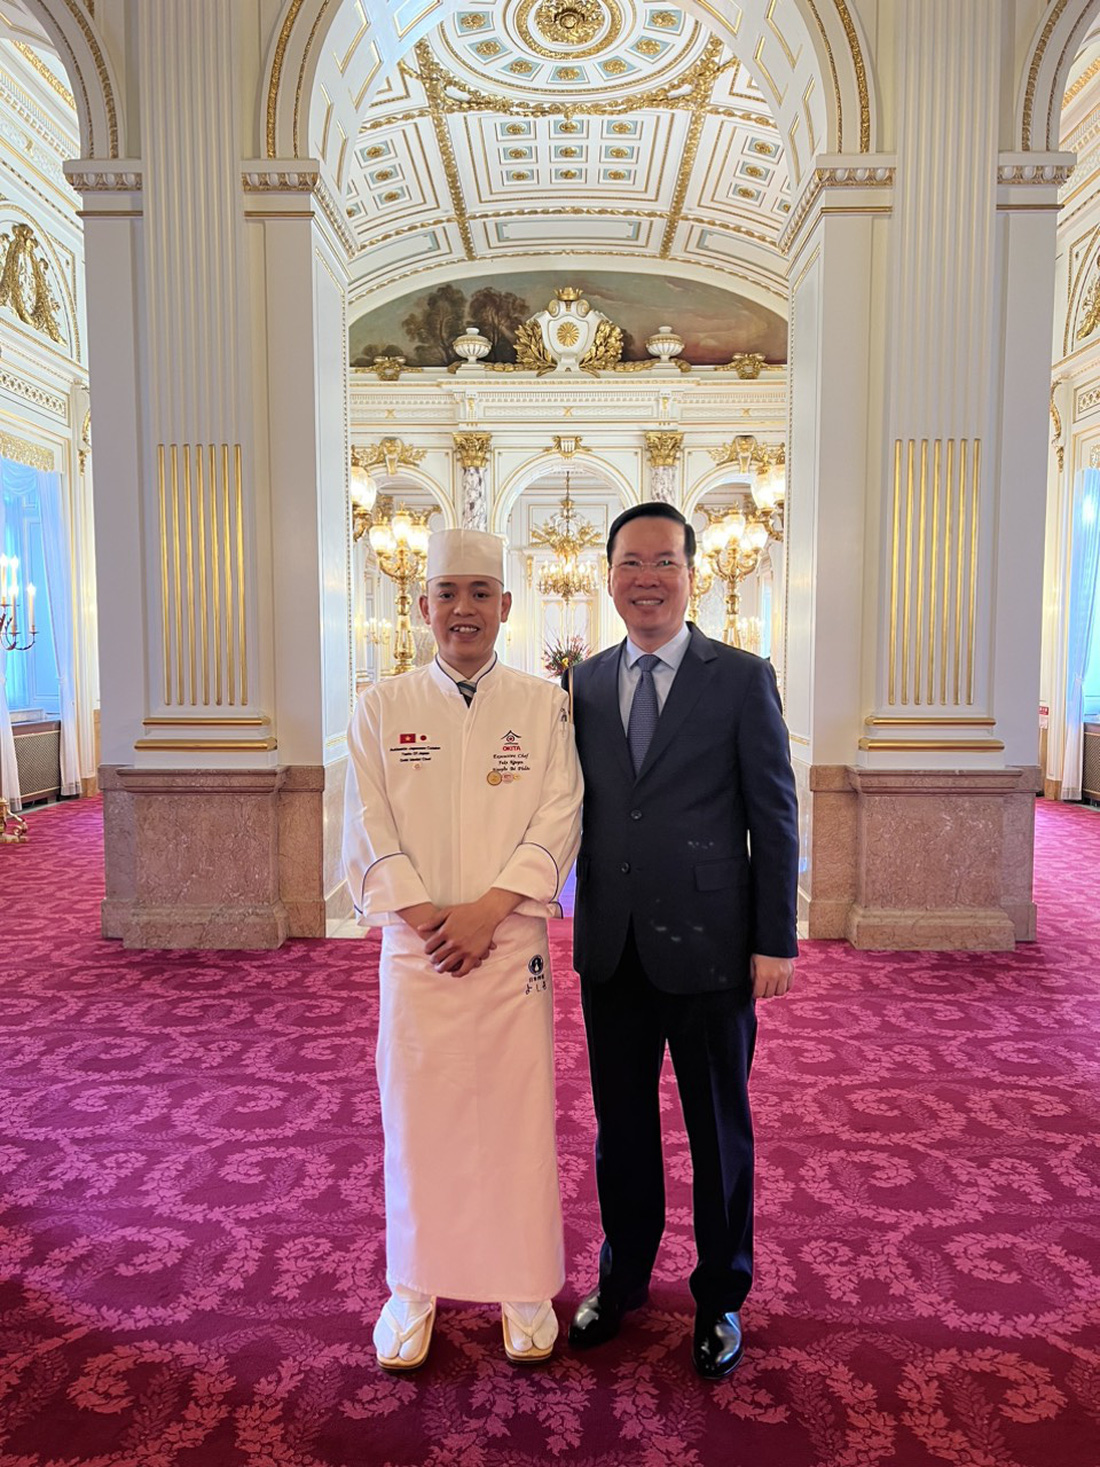 Đầu bếp Nguyễn Bá Phước chụp ảnh cùng Chủ tịch nước Võ Văn Thưởng ngày 29-11 - Ảnh: Nhân vật cung cấp